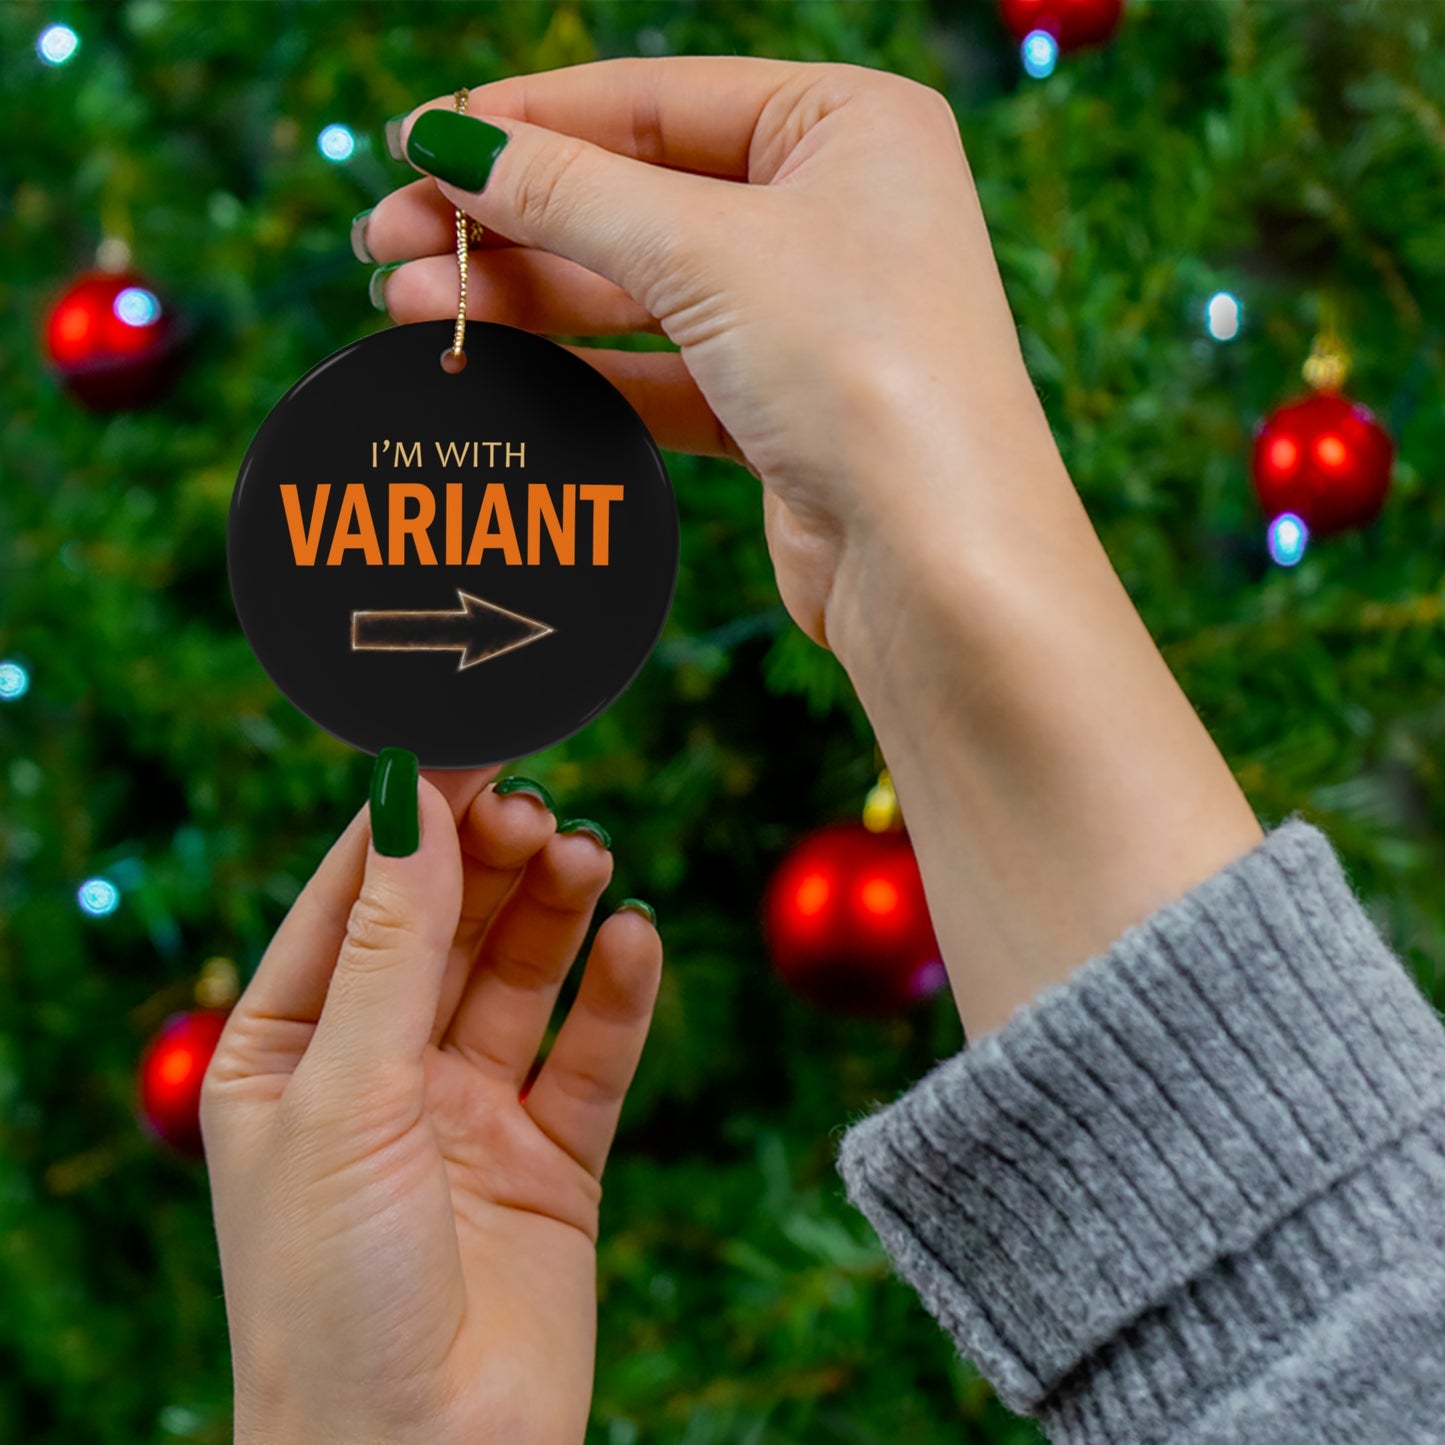 "Variant" - Ceramic Ornament